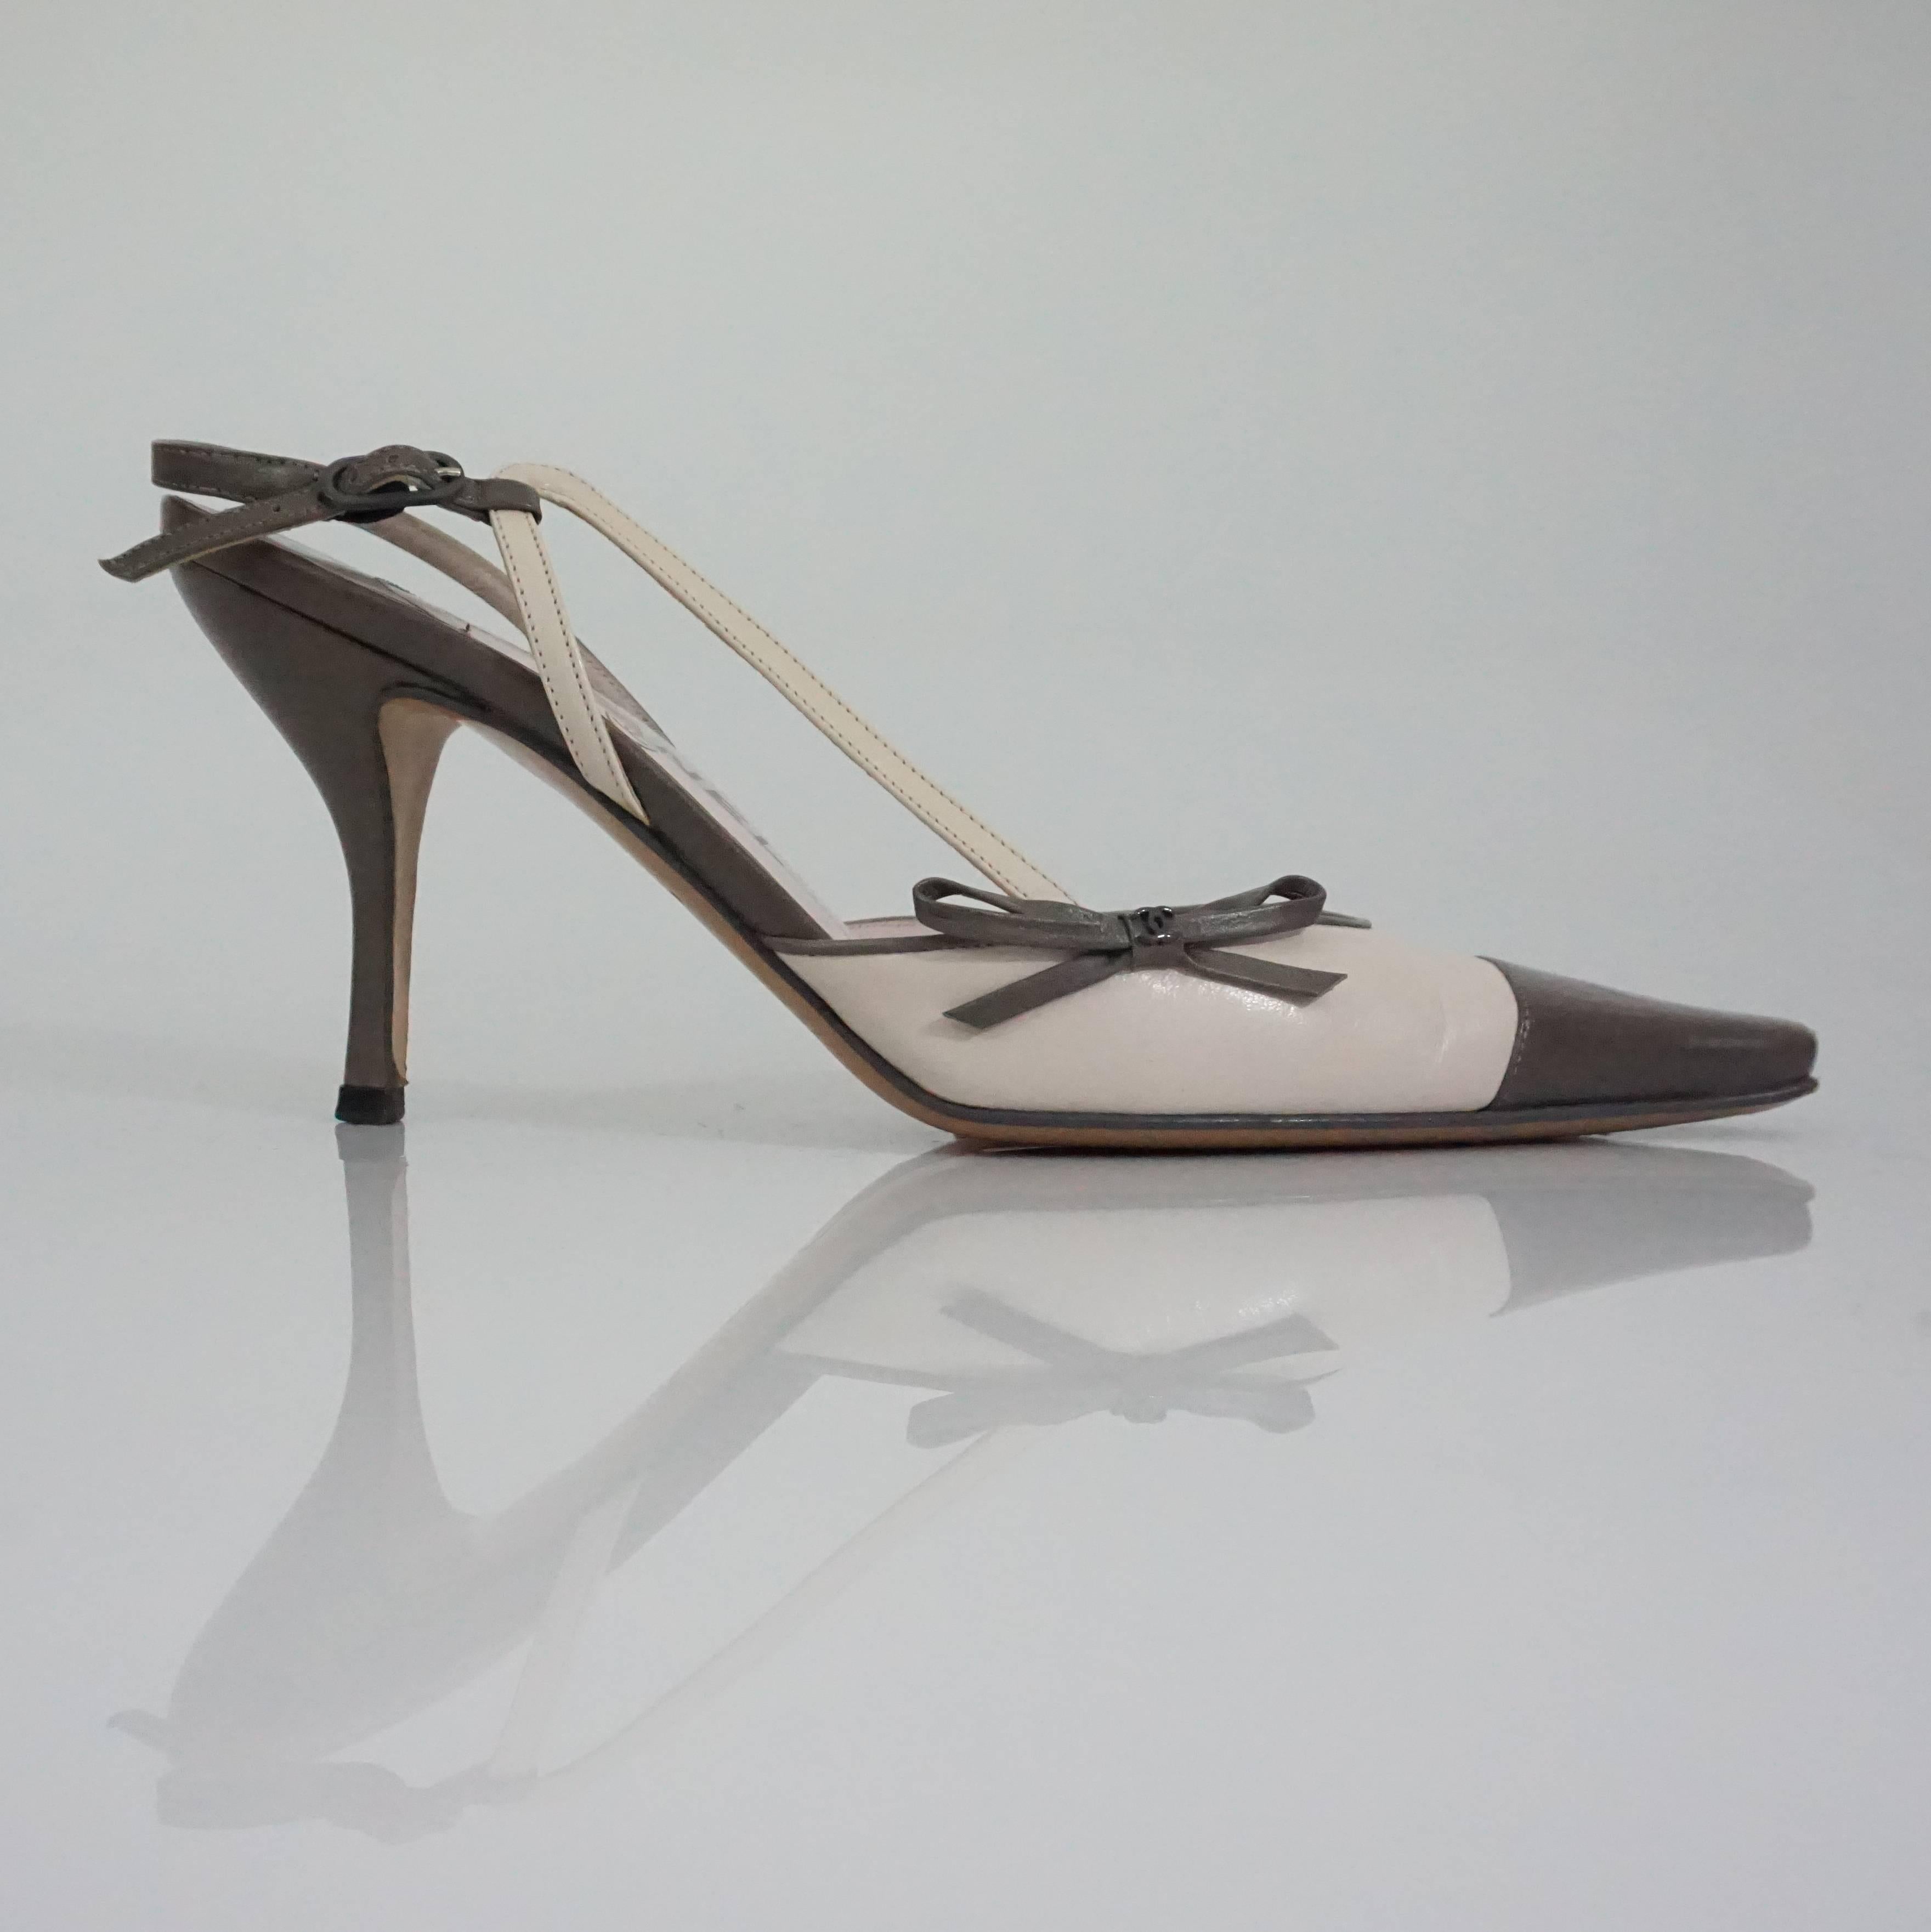 Chanel Creme and Taupe Slingback Heels - 37.5 Ces escarpins ont un noeud sur le côté avec une sangle décorative supplémentaire sur un côté des chaussures. La chaussure est en bon état, avec une usure mineure. 
Mesures :
Hauteur du talon : 3,75